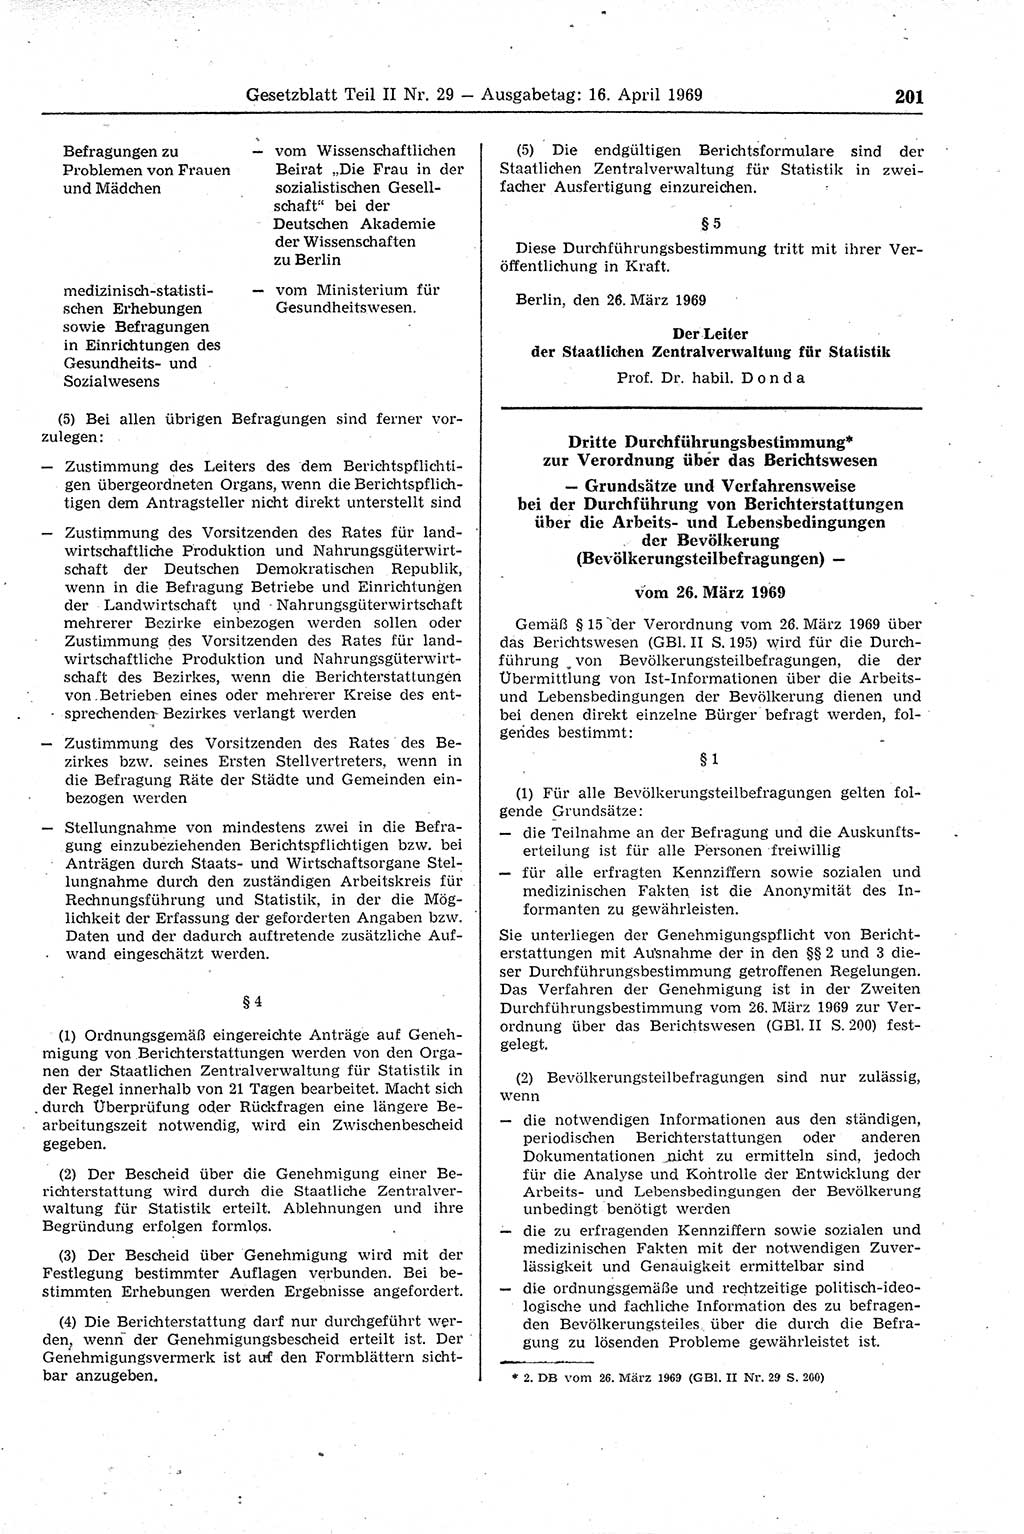 Gesetzblatt (GBl.) der Deutschen Demokratischen Republik (DDR) Teil ⅠⅠ 1969, Seite 201 (GBl. DDR ⅠⅠ 1969, S. 201)